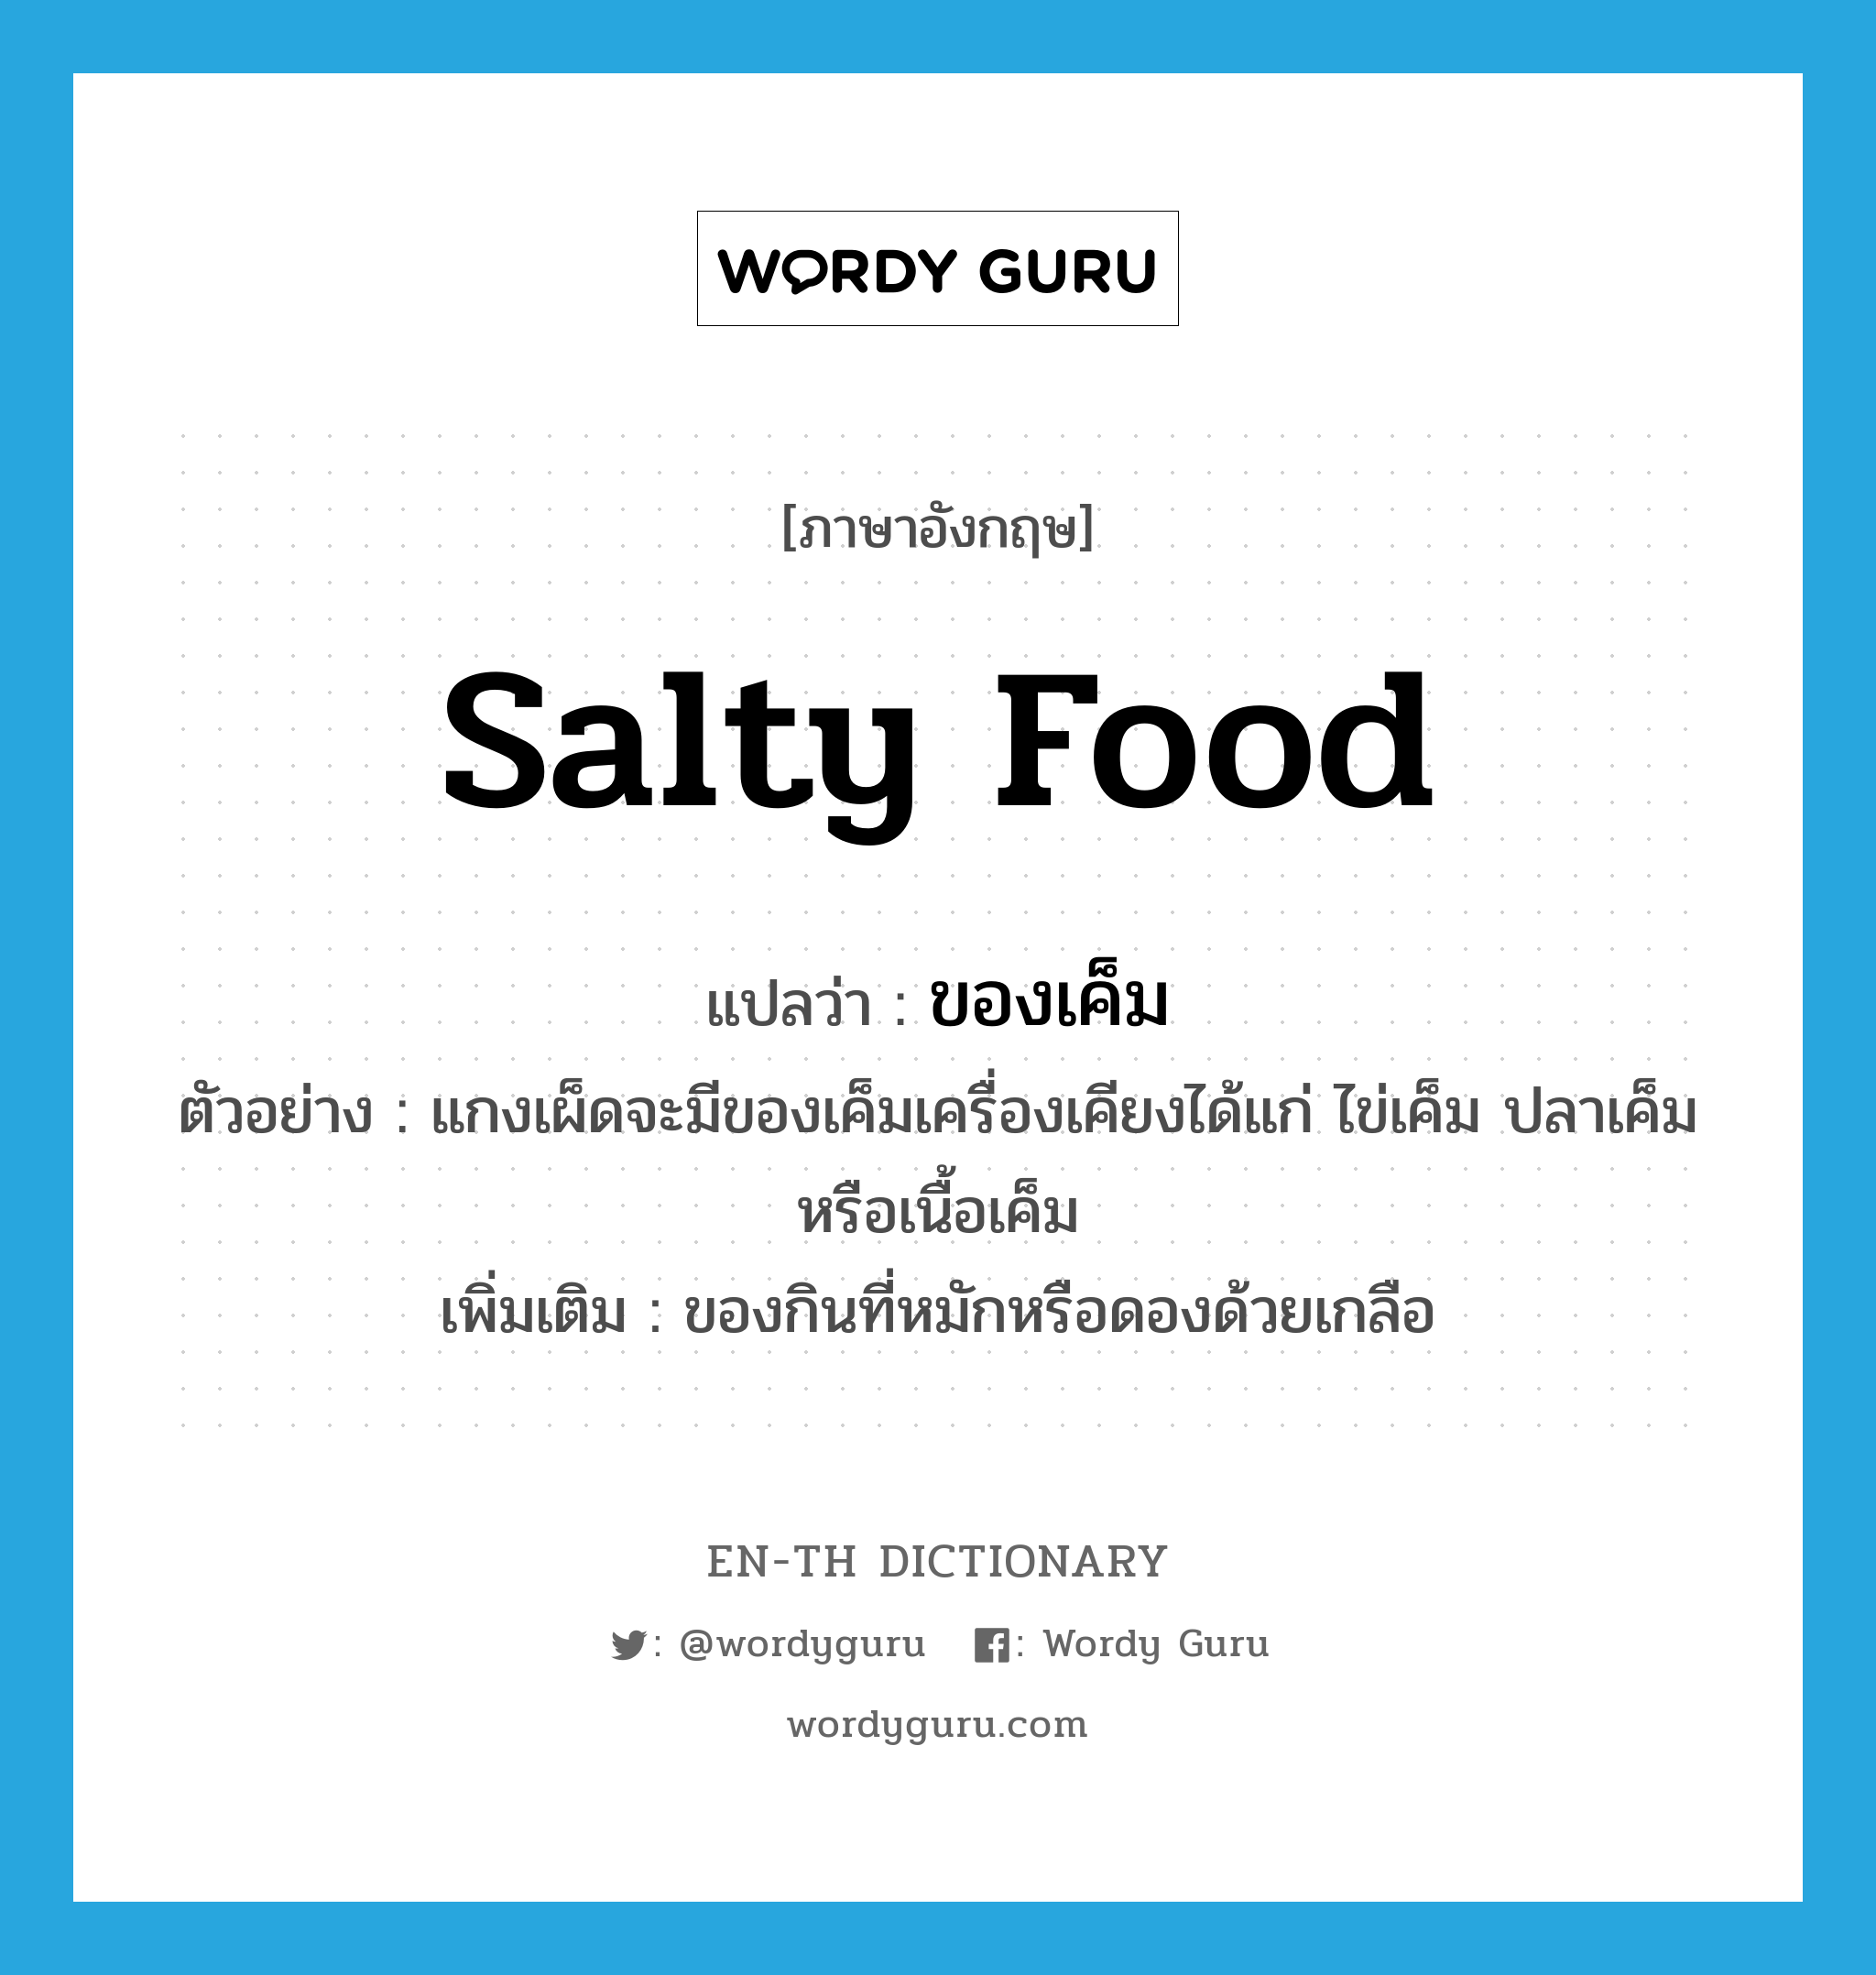 salty food แปลว่า?, คำศัพท์ภาษาอังกฤษ salty food แปลว่า ของเค็ม ประเภท N ตัวอย่าง แกงเผ็ดจะมีของเค็มเครื่องเคียงได้แก่ ไข่เค็ม ปลาเค็ม หรือเนื้อเค็ม เพิ่มเติม ของกินที่หมักหรือดองด้วยเกลือ หมวด N